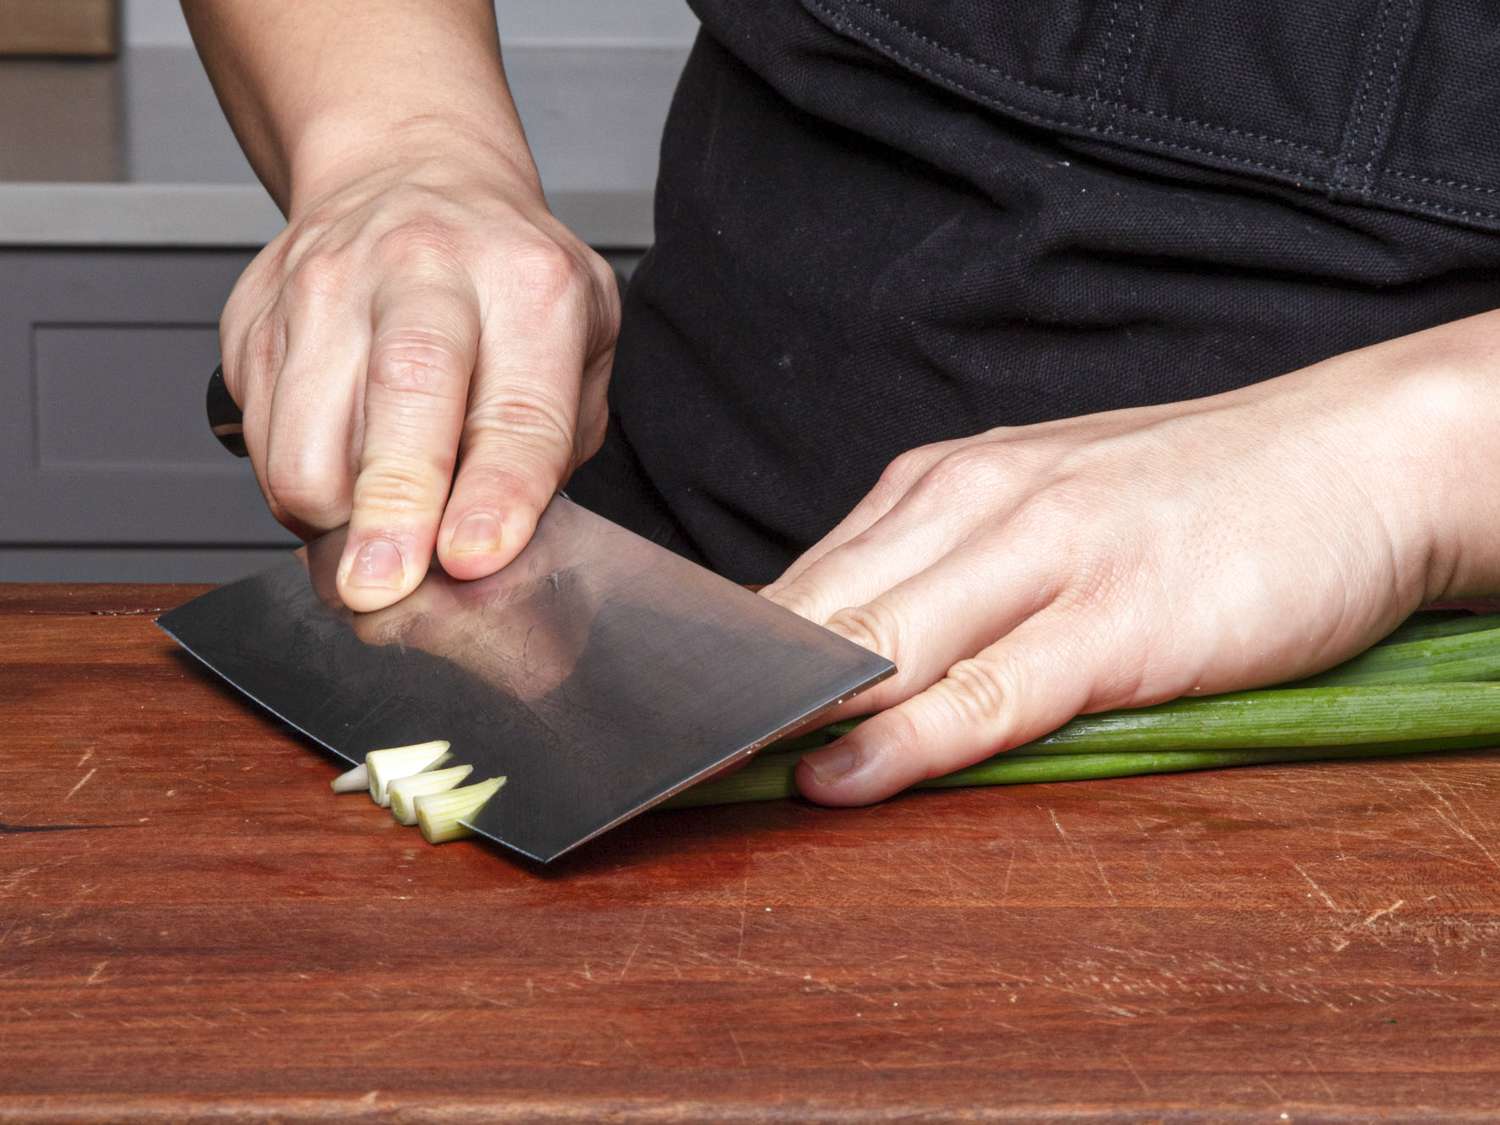 切葱花时要用反向倾斜法，即非惯用手的手指放在葱花上，形成决定切角的斜度;刀锋垂直于切菜板，角度略微向下。